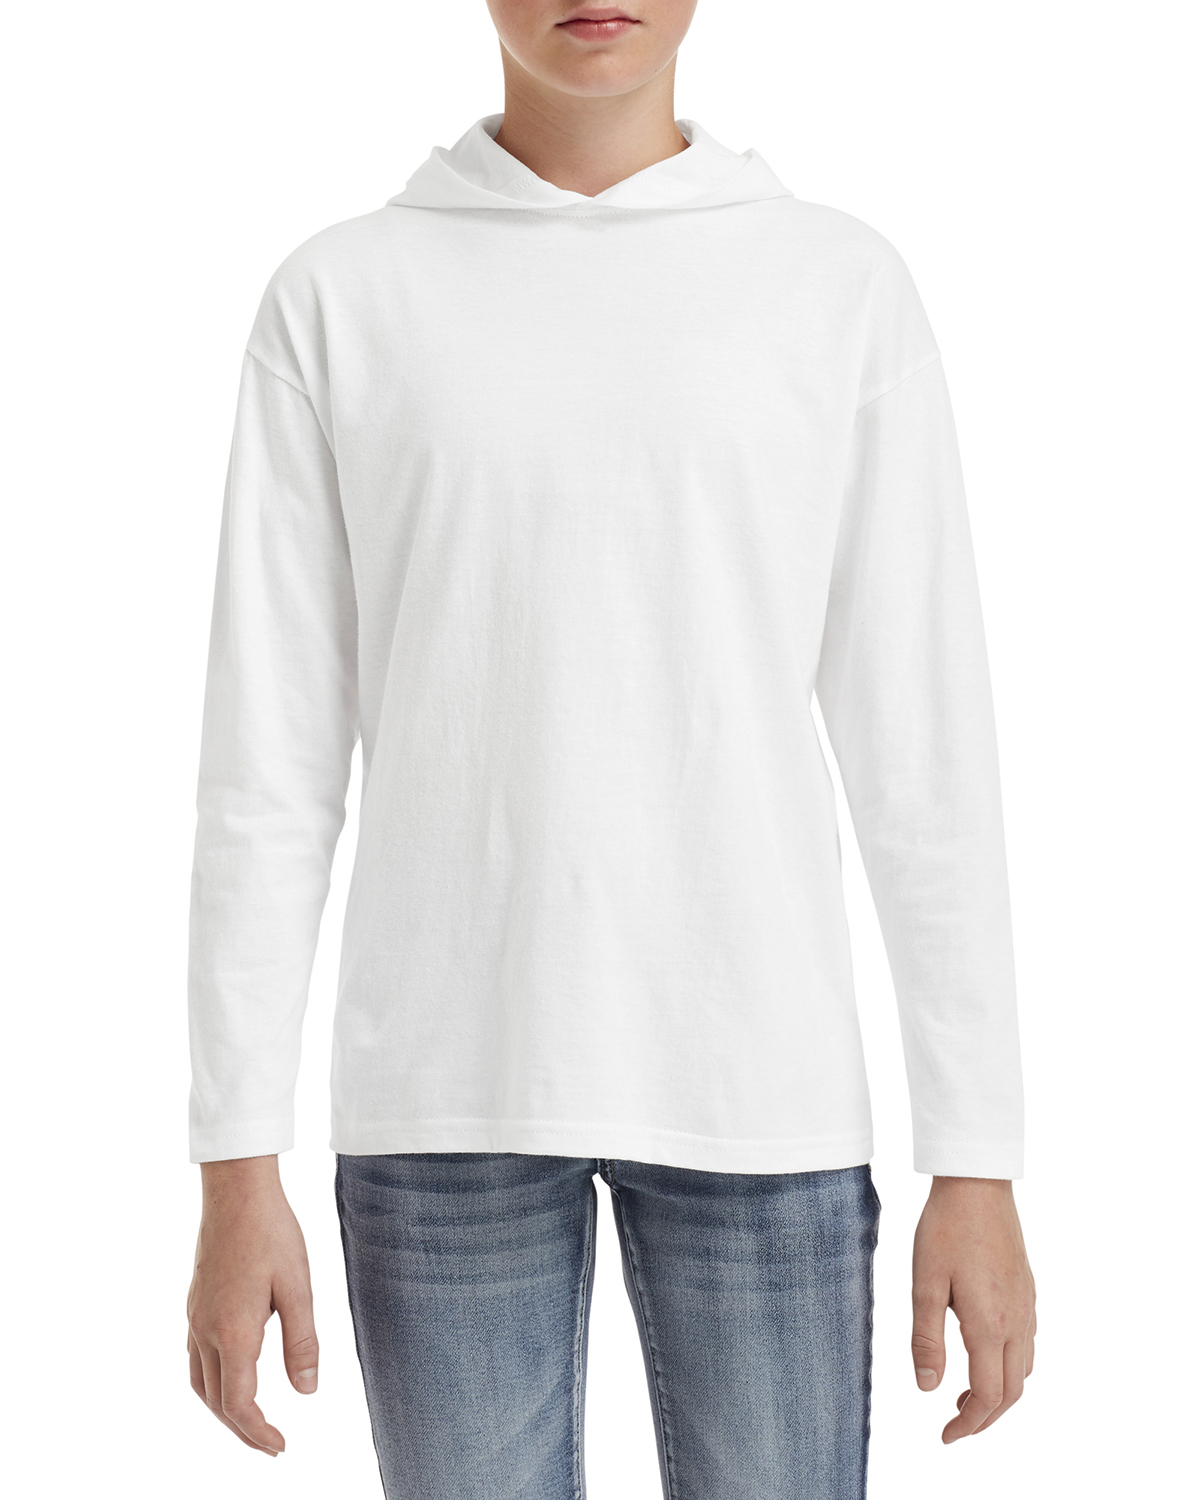 Anvil 987B Youth Long-Sleeve Hooded T-Shirt - Shirtmax